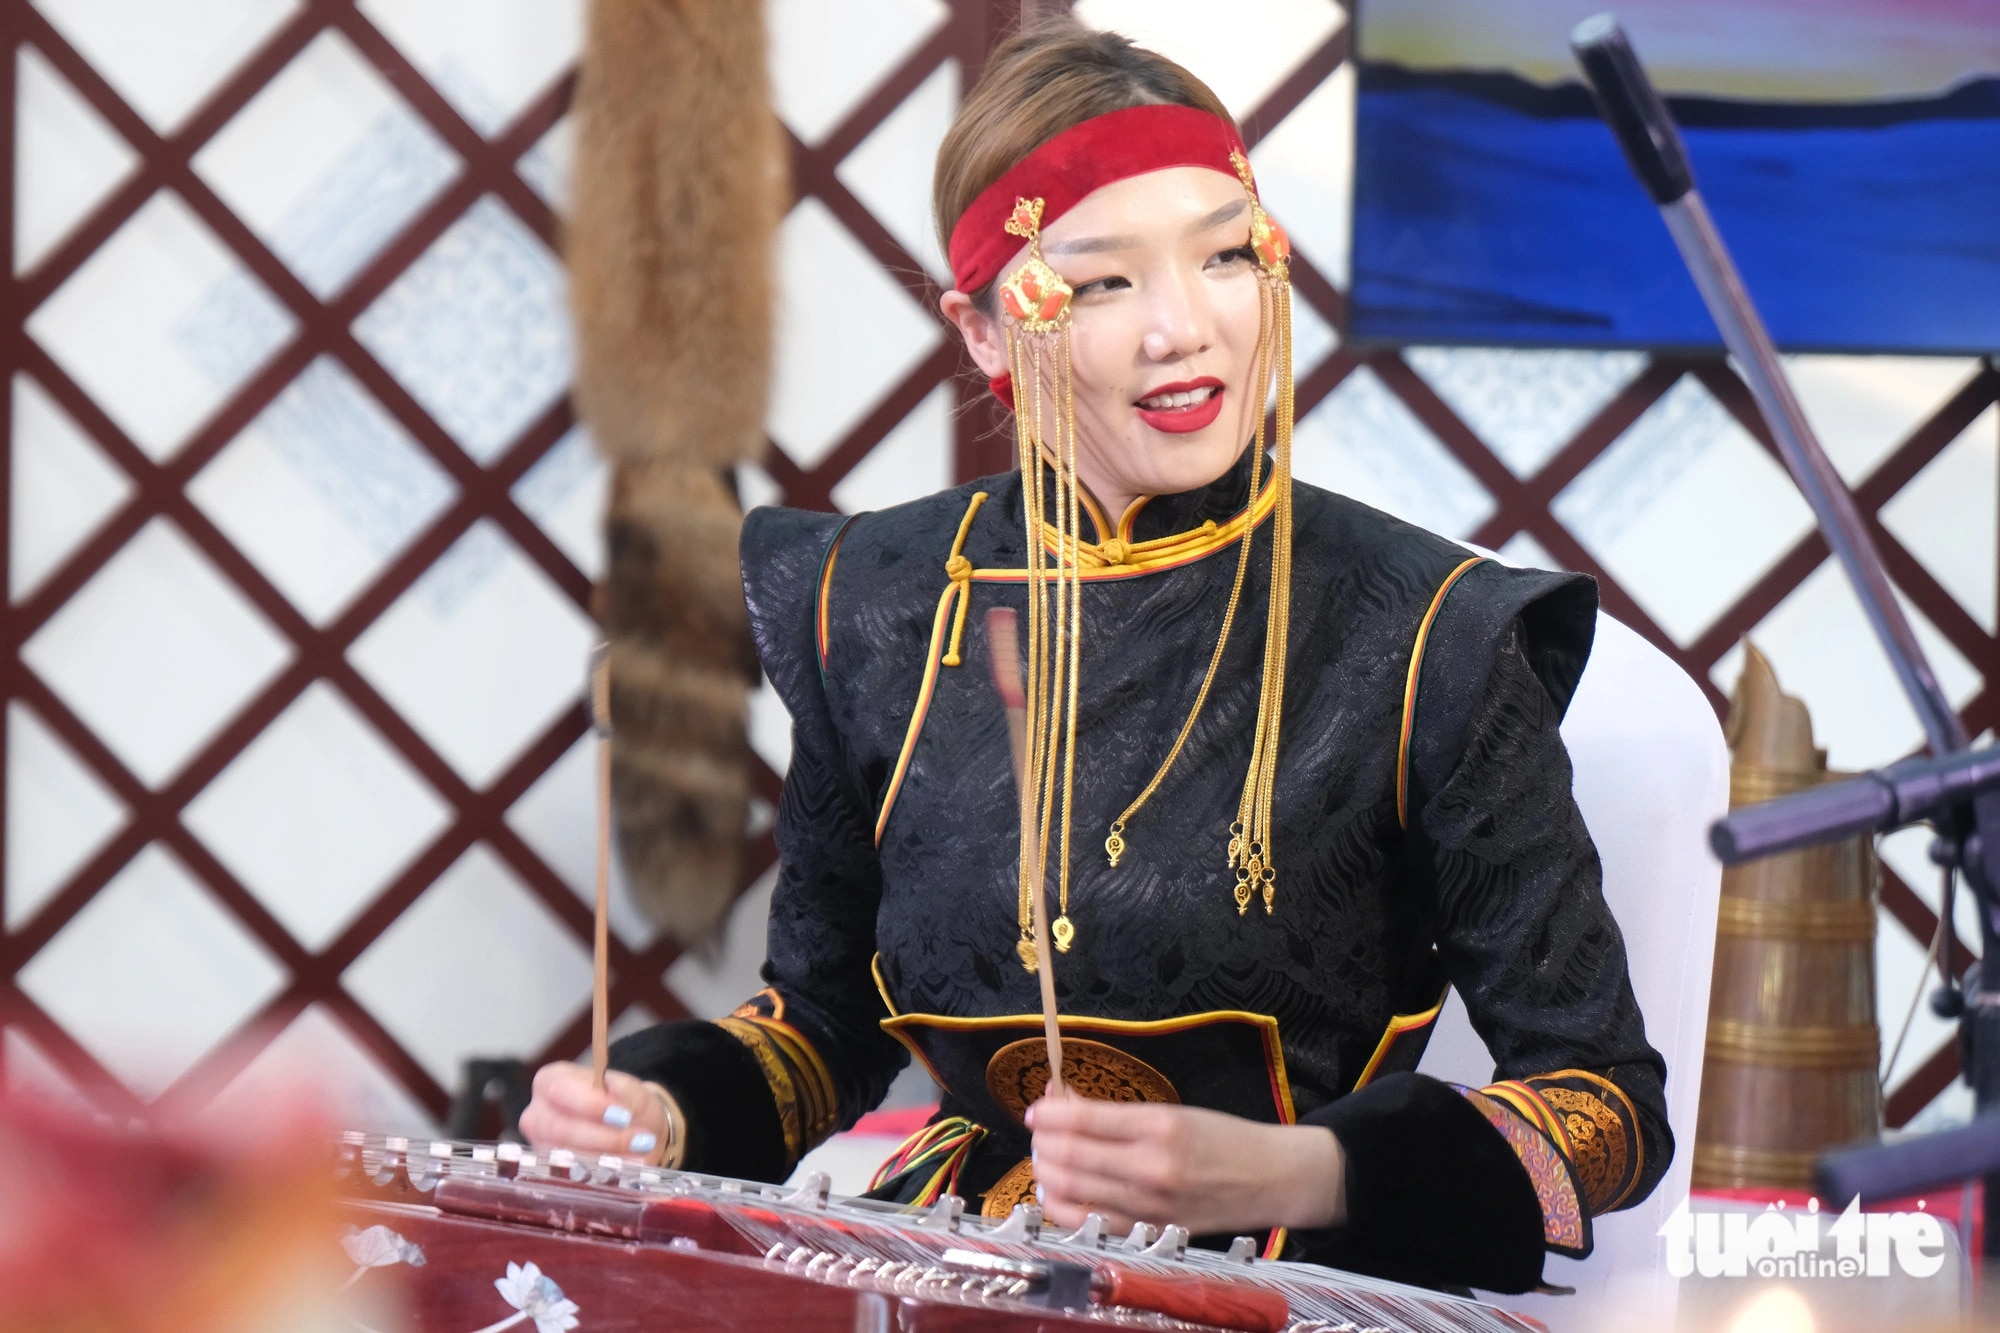 Natsagmaa (23 tuổi) - thành viên đoàn Mông Cổ - trong trang phục truyền thống biểu diễn nhạc cụ Yoochin. Đây là lần đầu tiên cô và các thành viên trong nhóm biểu diễn đến Việt Nam để quảng bá đất nước mình - Ảnh: VŨ THỦY